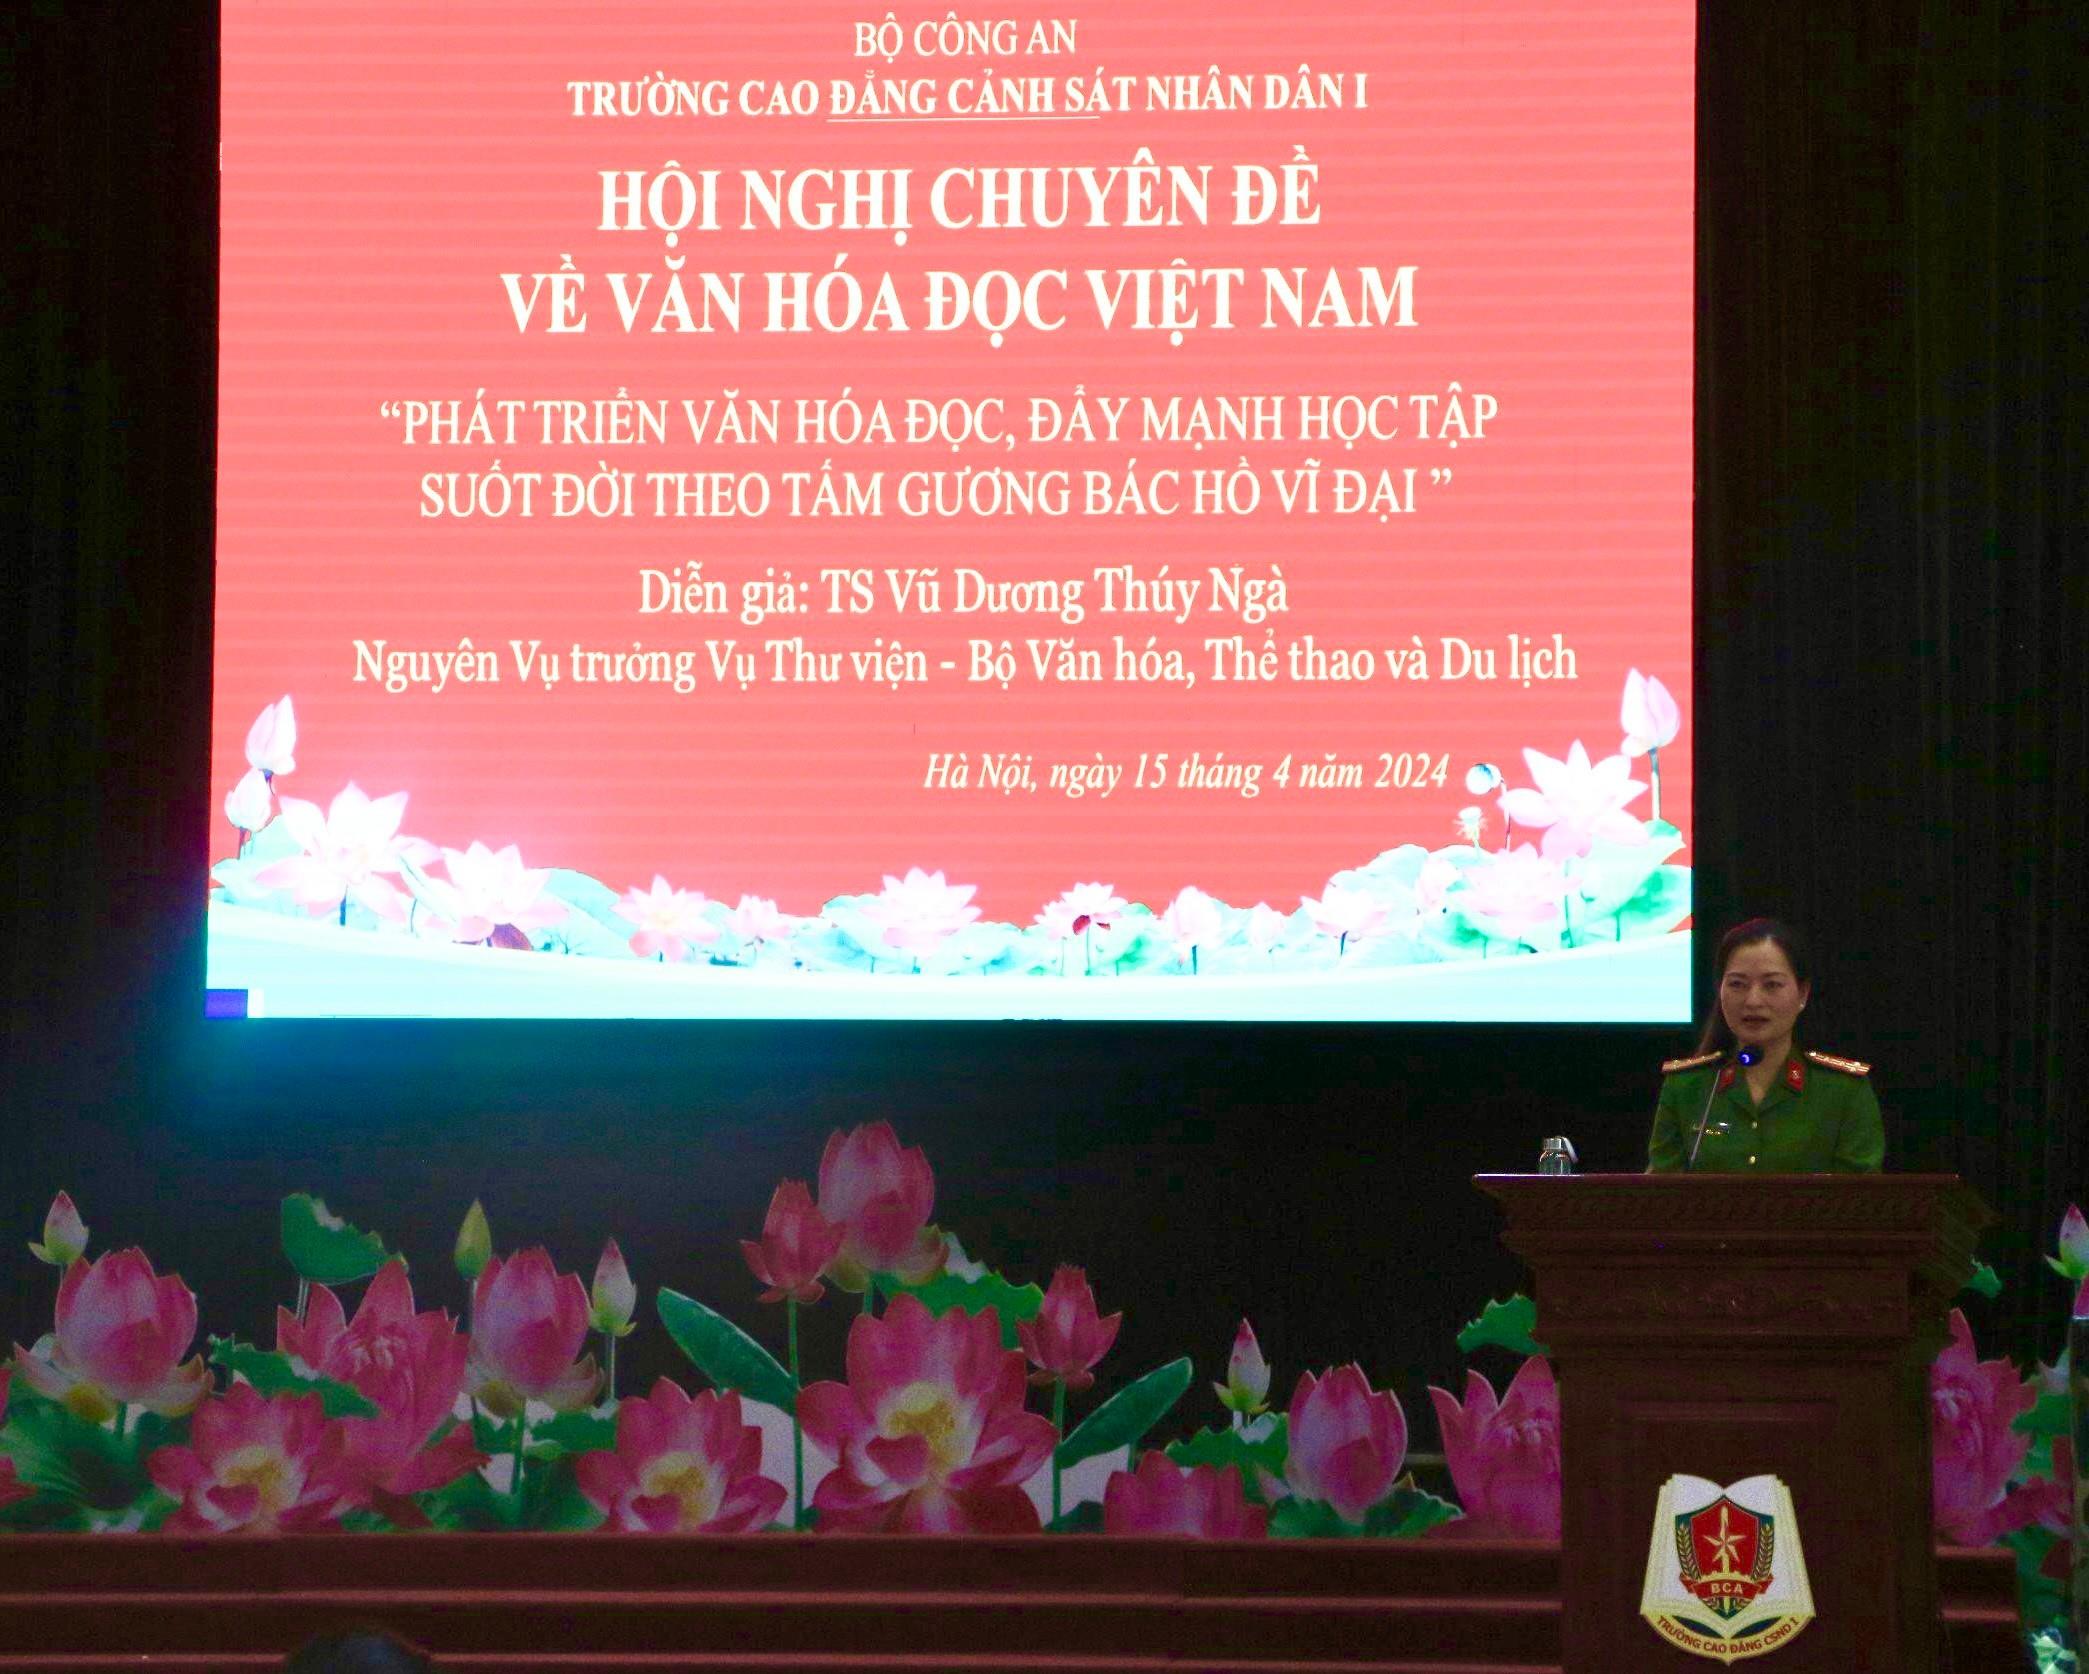 Hội nghị nói chuyện chuyền đề văn hoá đọc Việt Nam với chủ đề “Phát triển văn hoá đọc, đẩy mạnh học tập suốt đời theo tấm gương Bác Hồ vĩ đại”